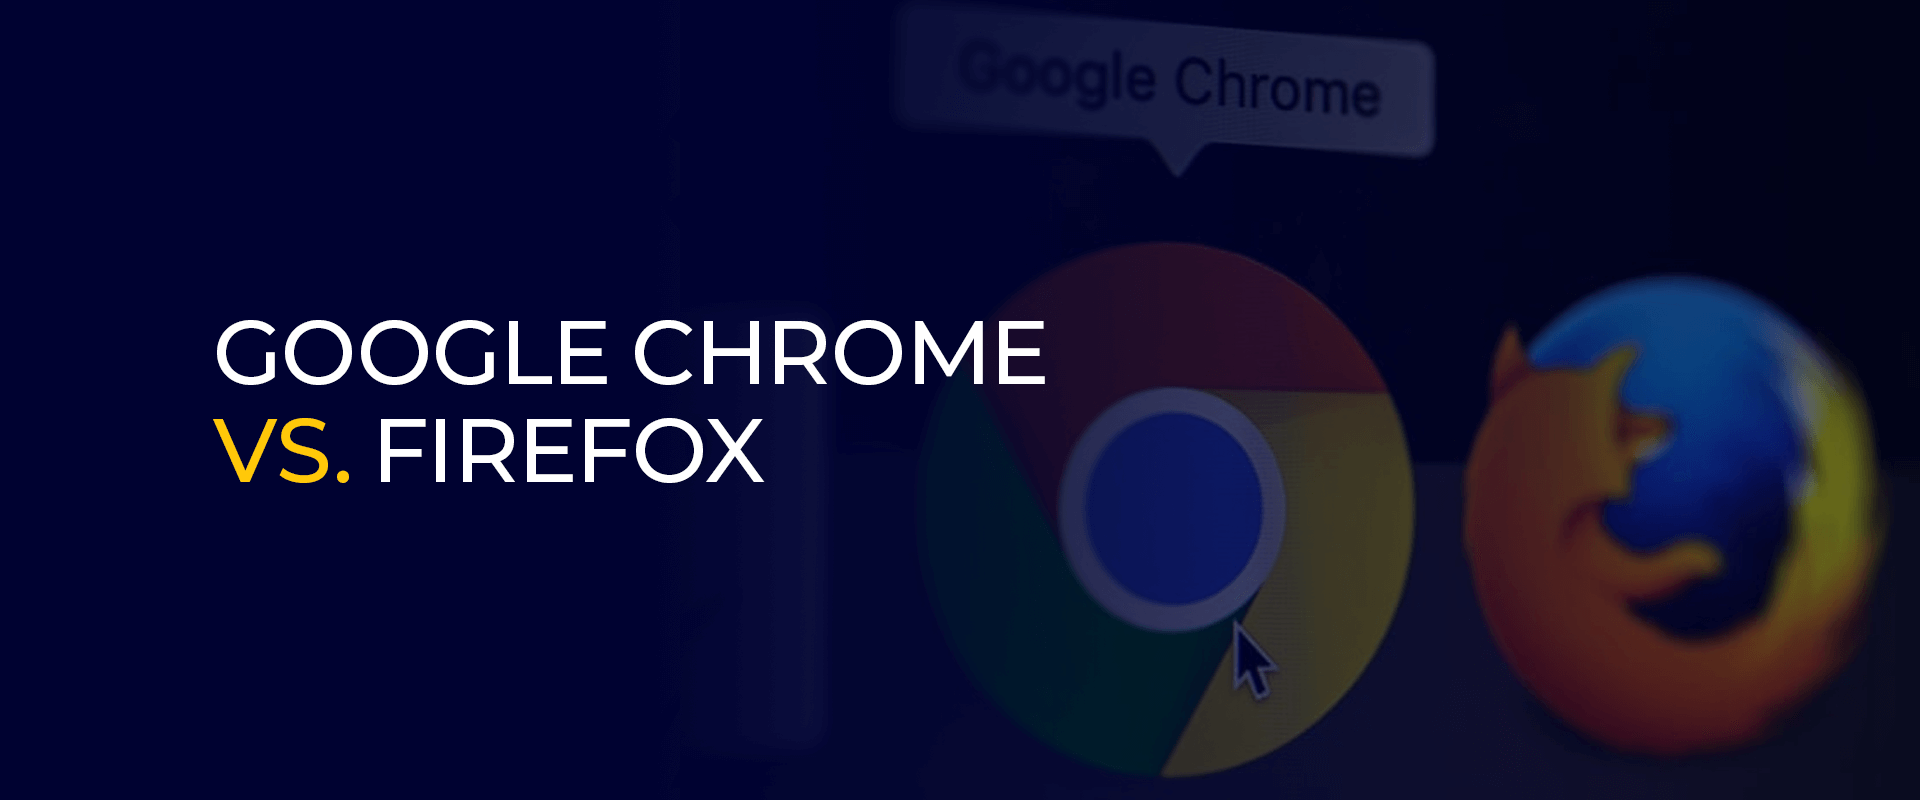 Google Chrome vs. Firefox